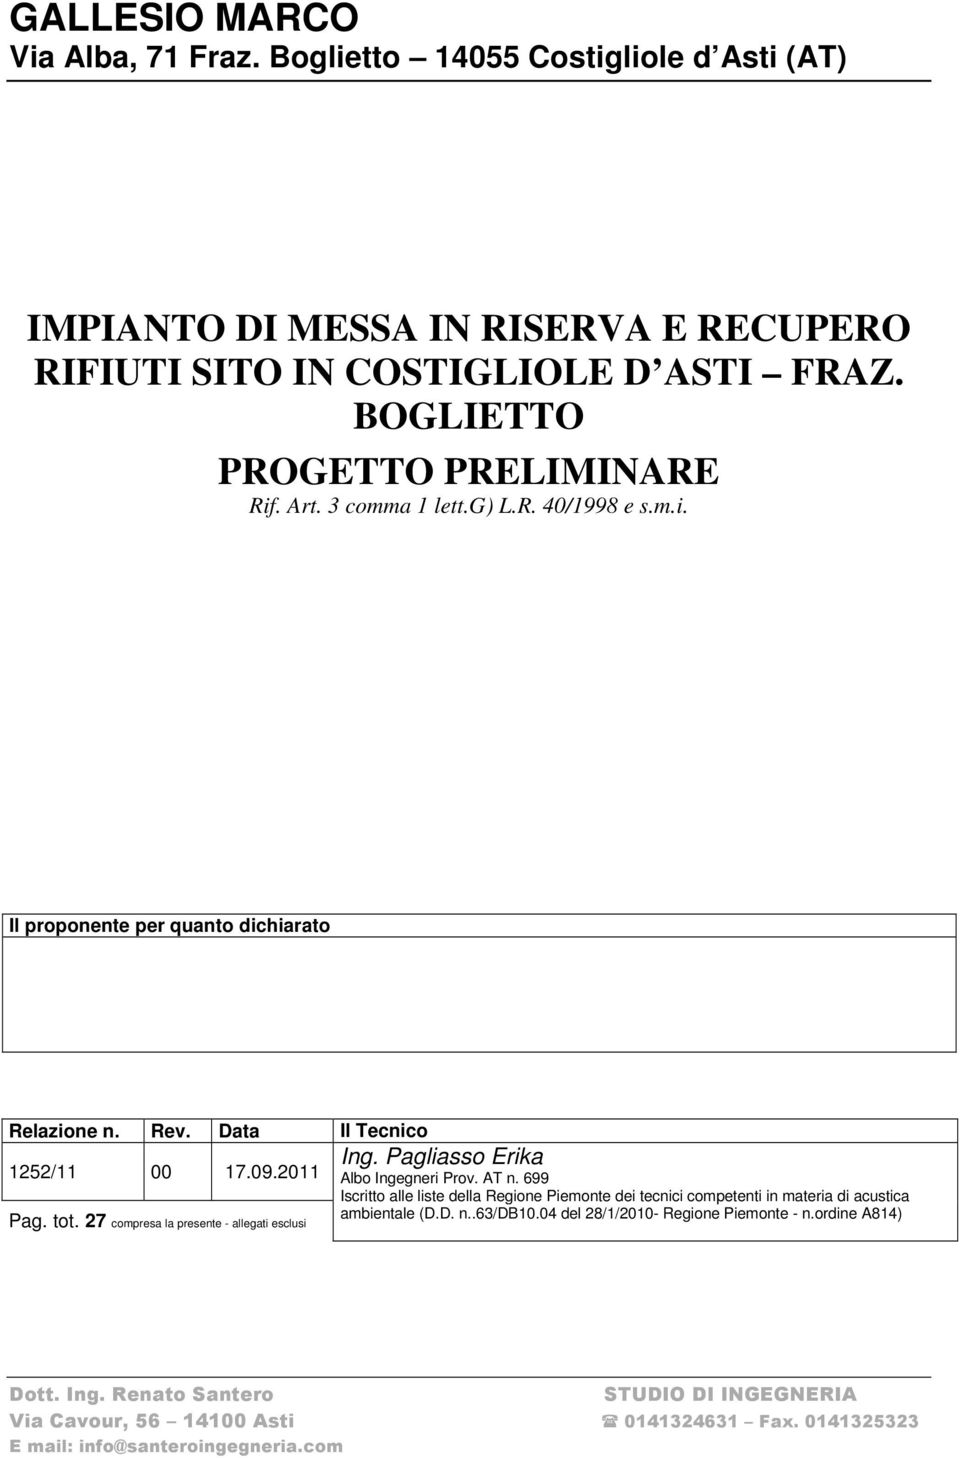 Pagliasso Erika Albo Ingegneri Prov. AT n. 699 Iscritto alle liste della Regione Piemonte dei tecnici competenti in materia di acustica ambientale (D.D. n..63/db10.